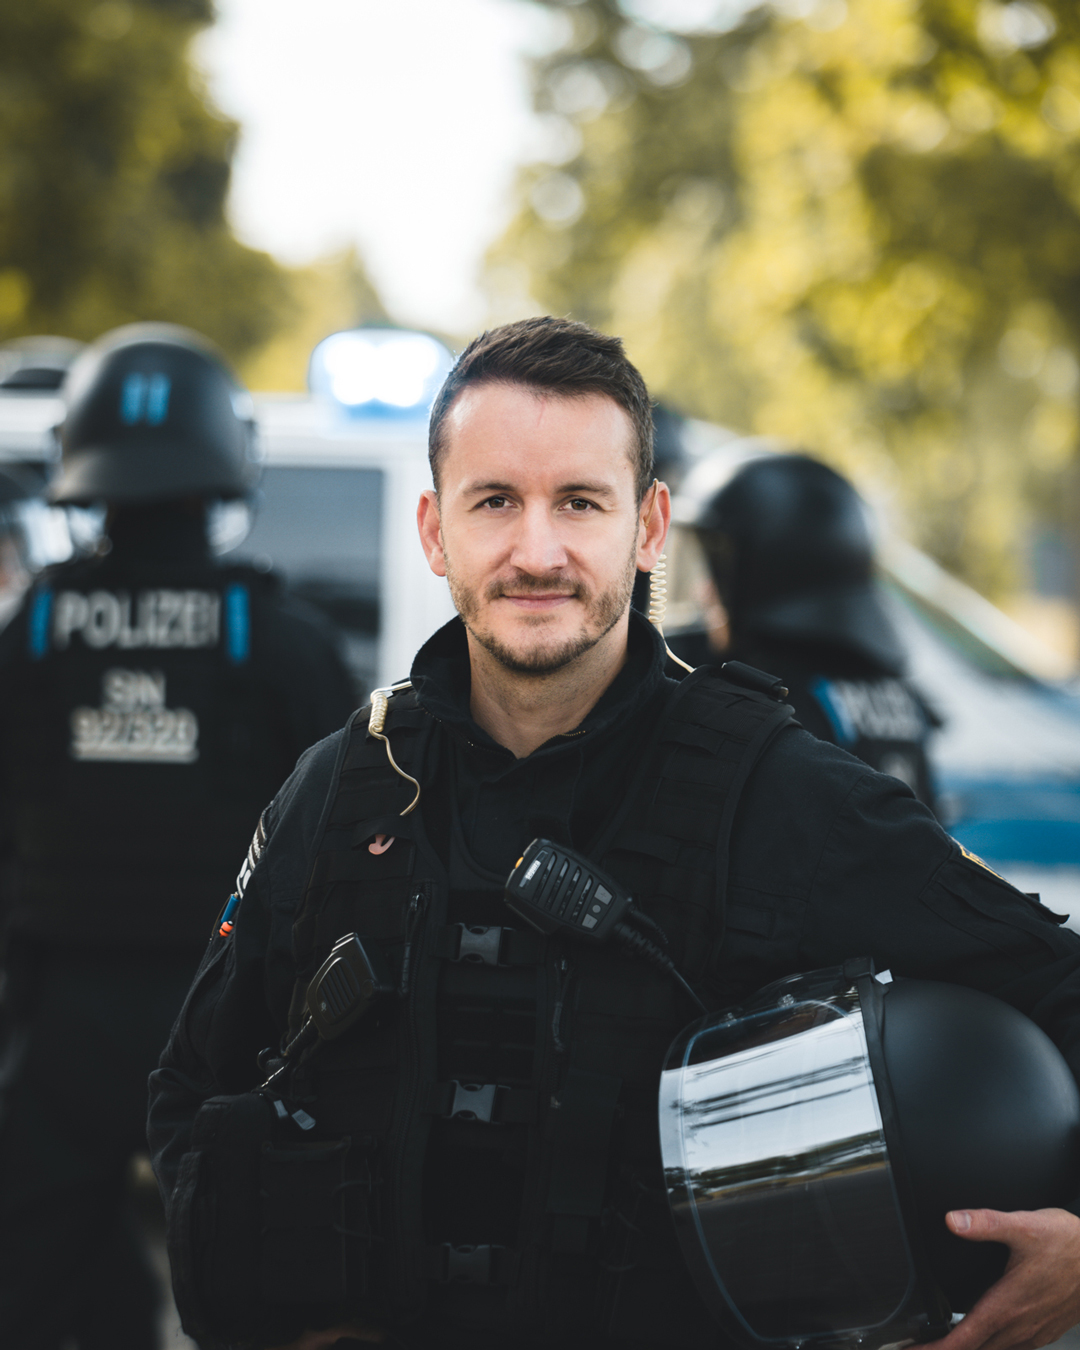 Polizei Sachsen - Polizei Sachsen - Bewerbung für Ausbildung und Studium  2025 jetzt möglich